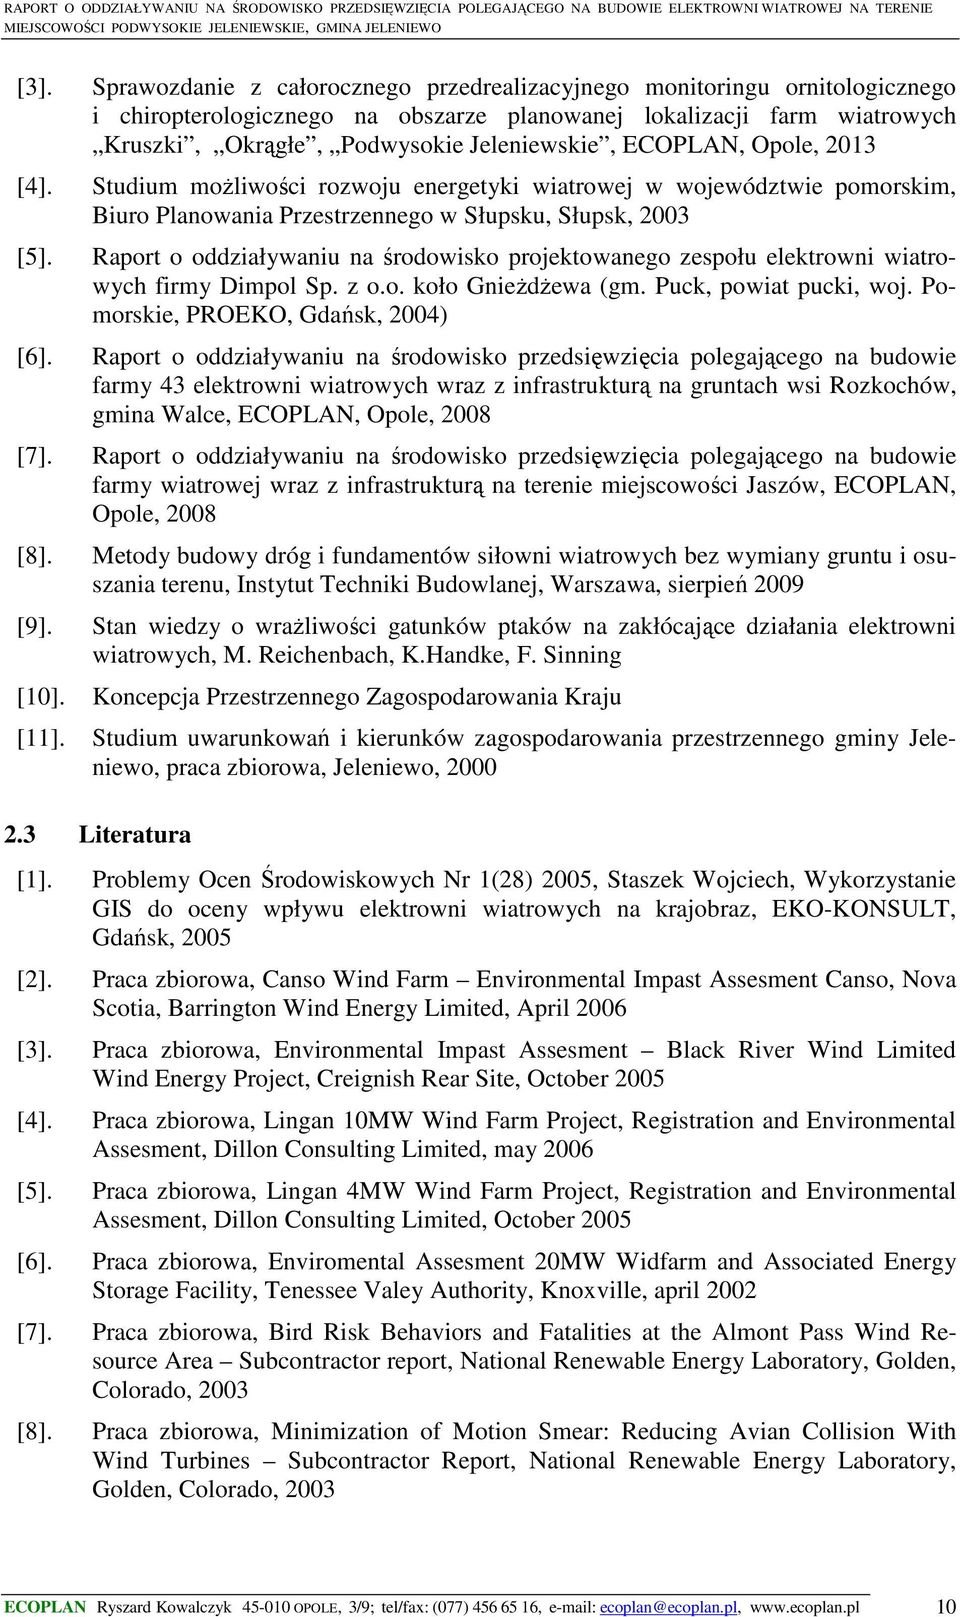 Raport o oddziaływaniu na środowisko projektowanego zespołu elektrowni wiatrowych firmy Dimpol Sp. z o.o. koło Gnieżdżewa (gm. Puck, powiat pucki, woj. Pomorskie, PROEKO, Gdańsk, 2004) [6].